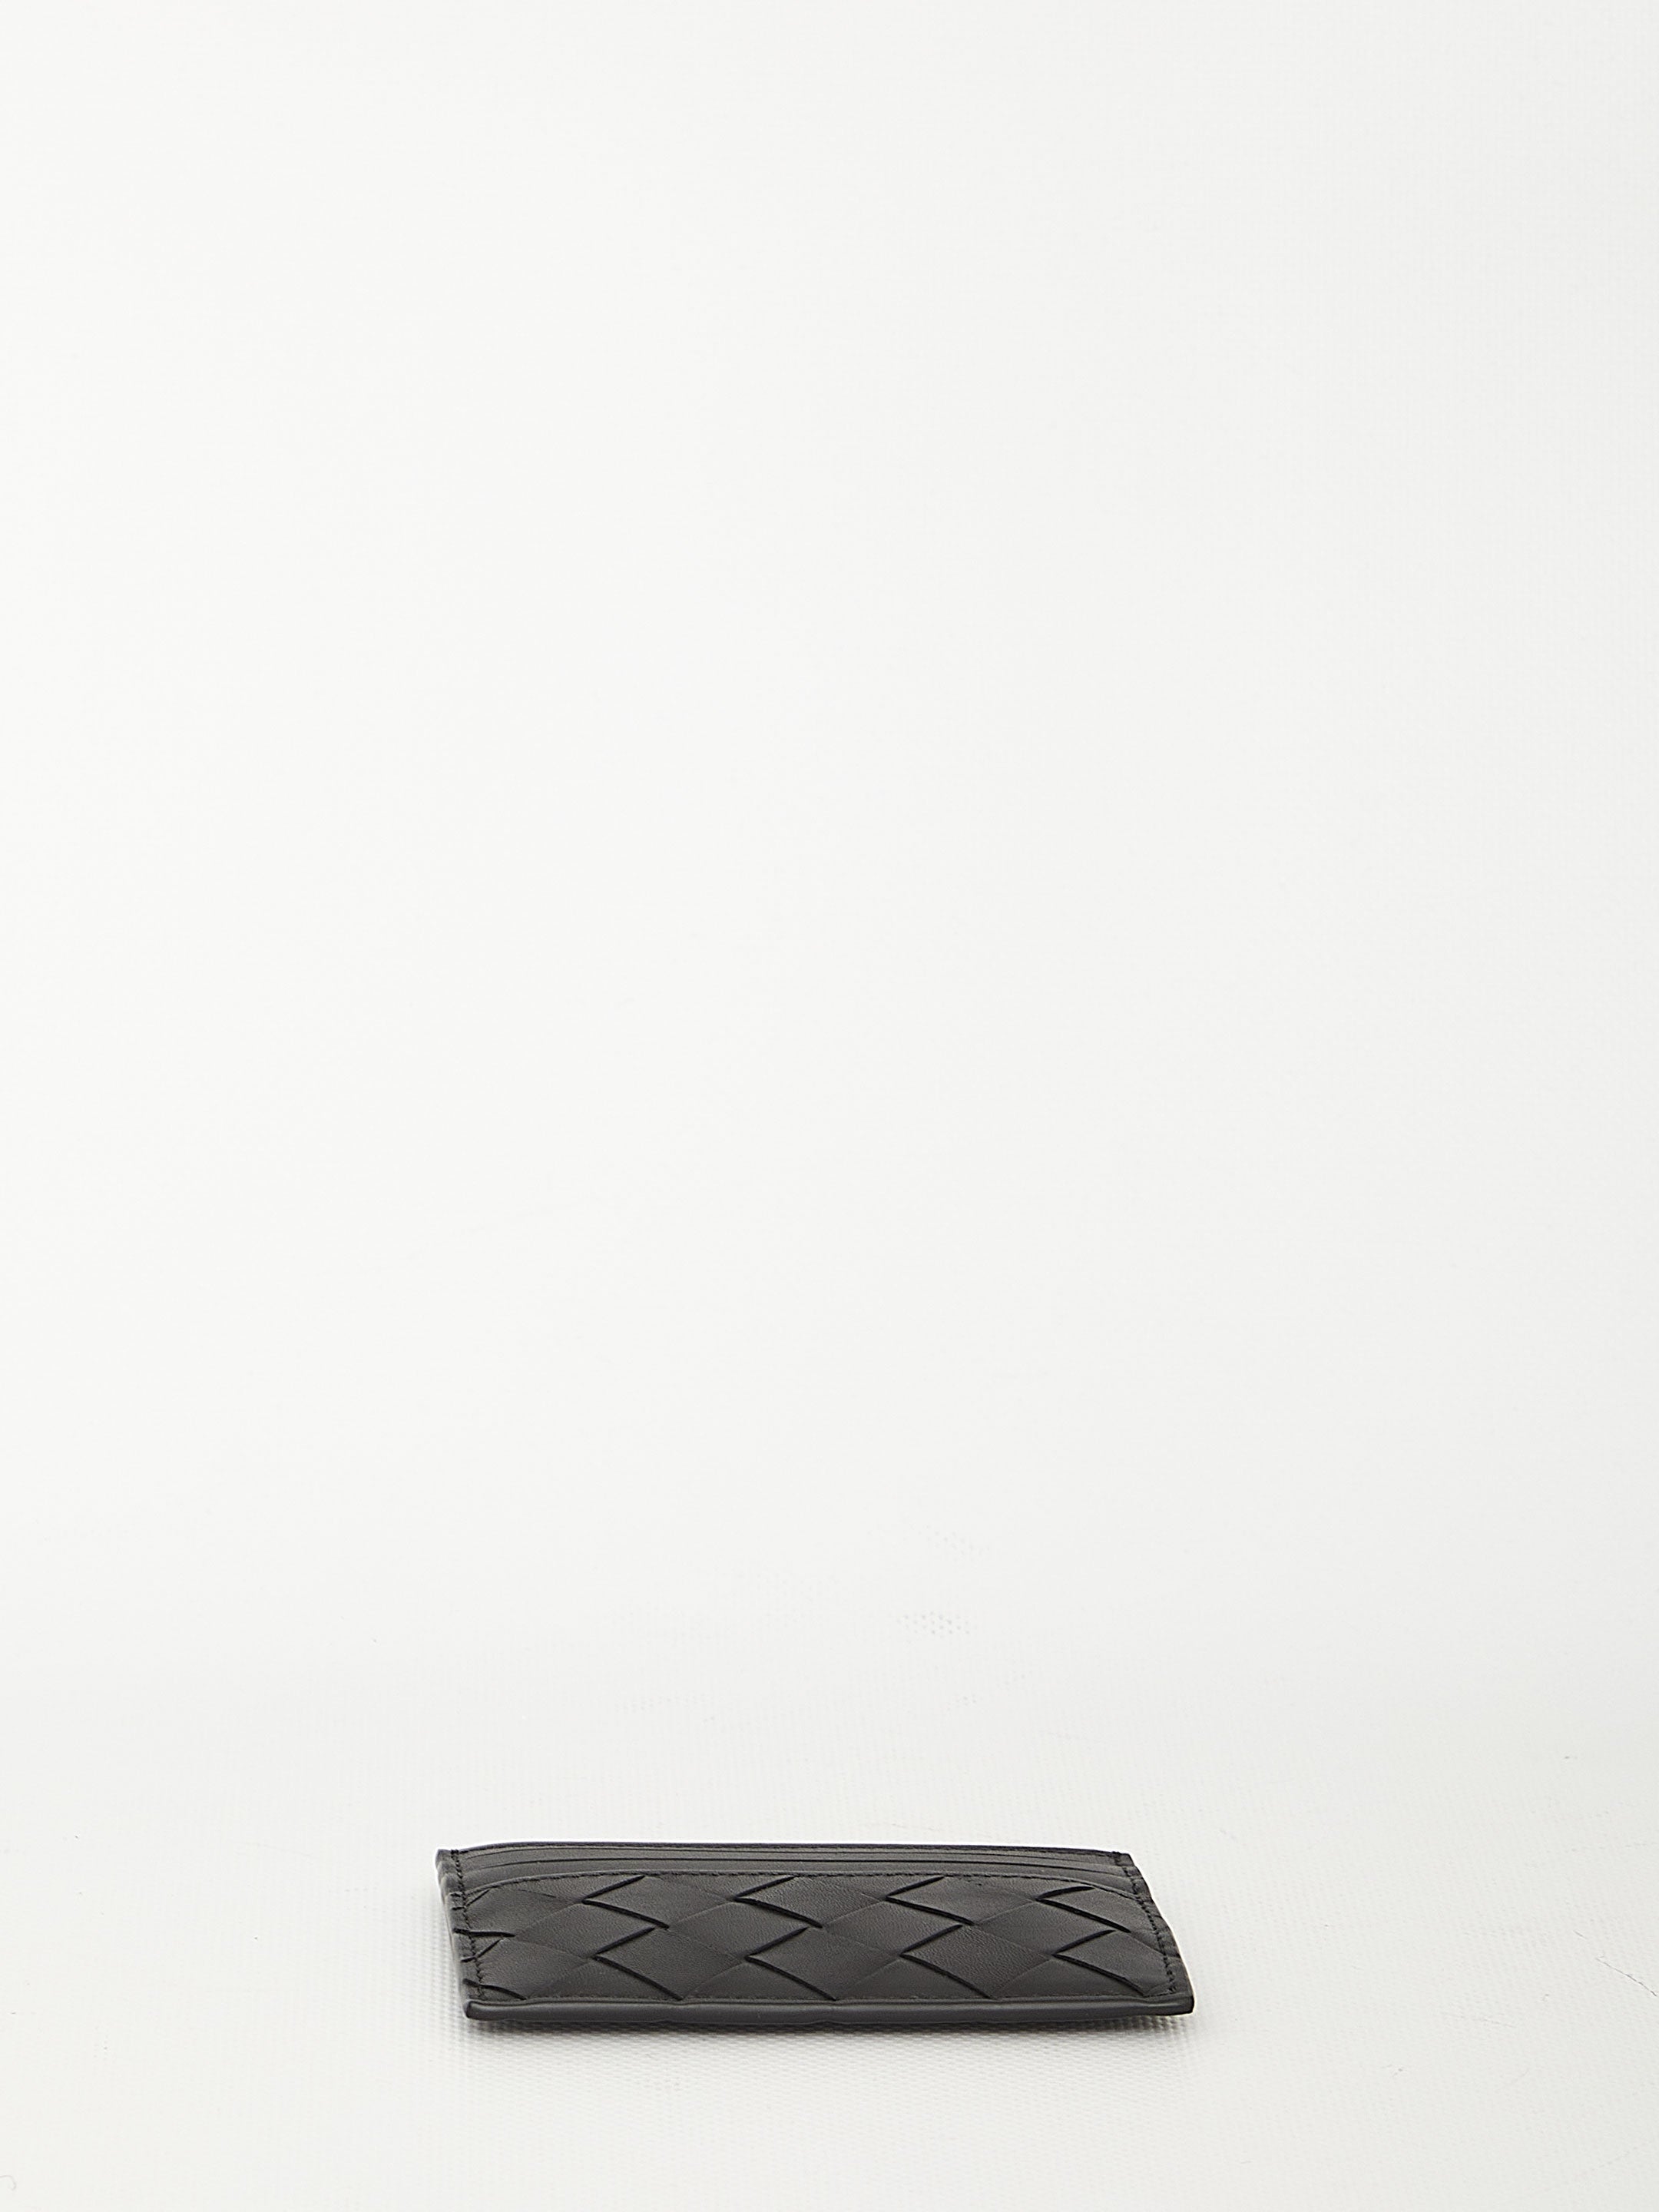 BOTTEGA-VENETA-OUTLET-SALE-Black-leather-cardholder-Taschen-QT-BLACK-ARCHIVE-COLLECTION-3.jpg